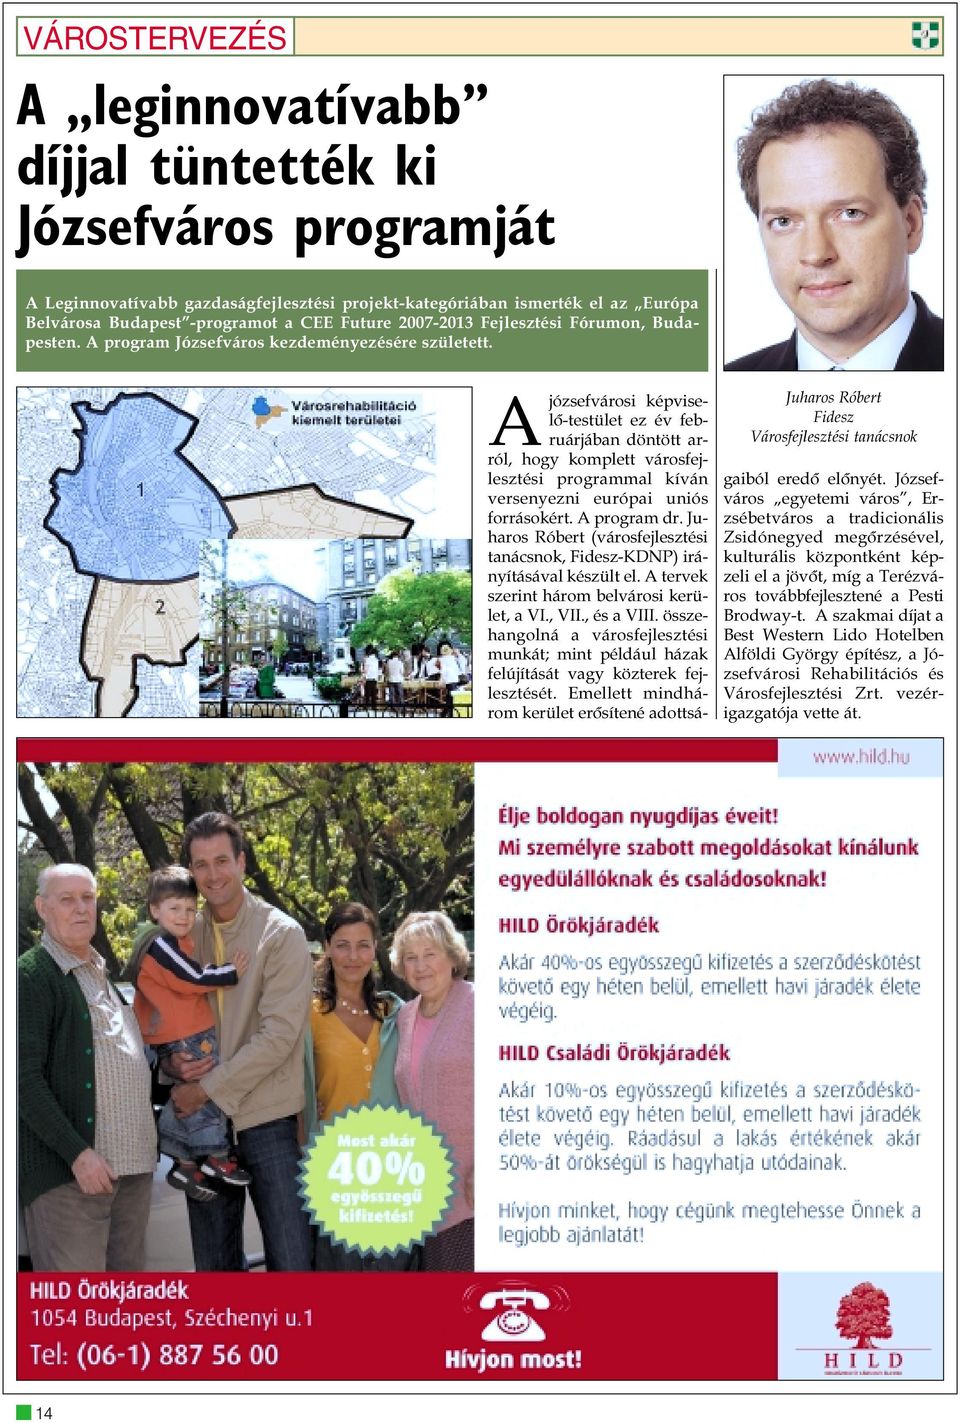 Juharos Róbert Fidesz Városfejlesztési tanácsnok Ajózsefvárosi képviselõ-testület ez év februárjában döntött arról, hogy komplett városfejlesztési programmal kíván versenyezni európai uniós